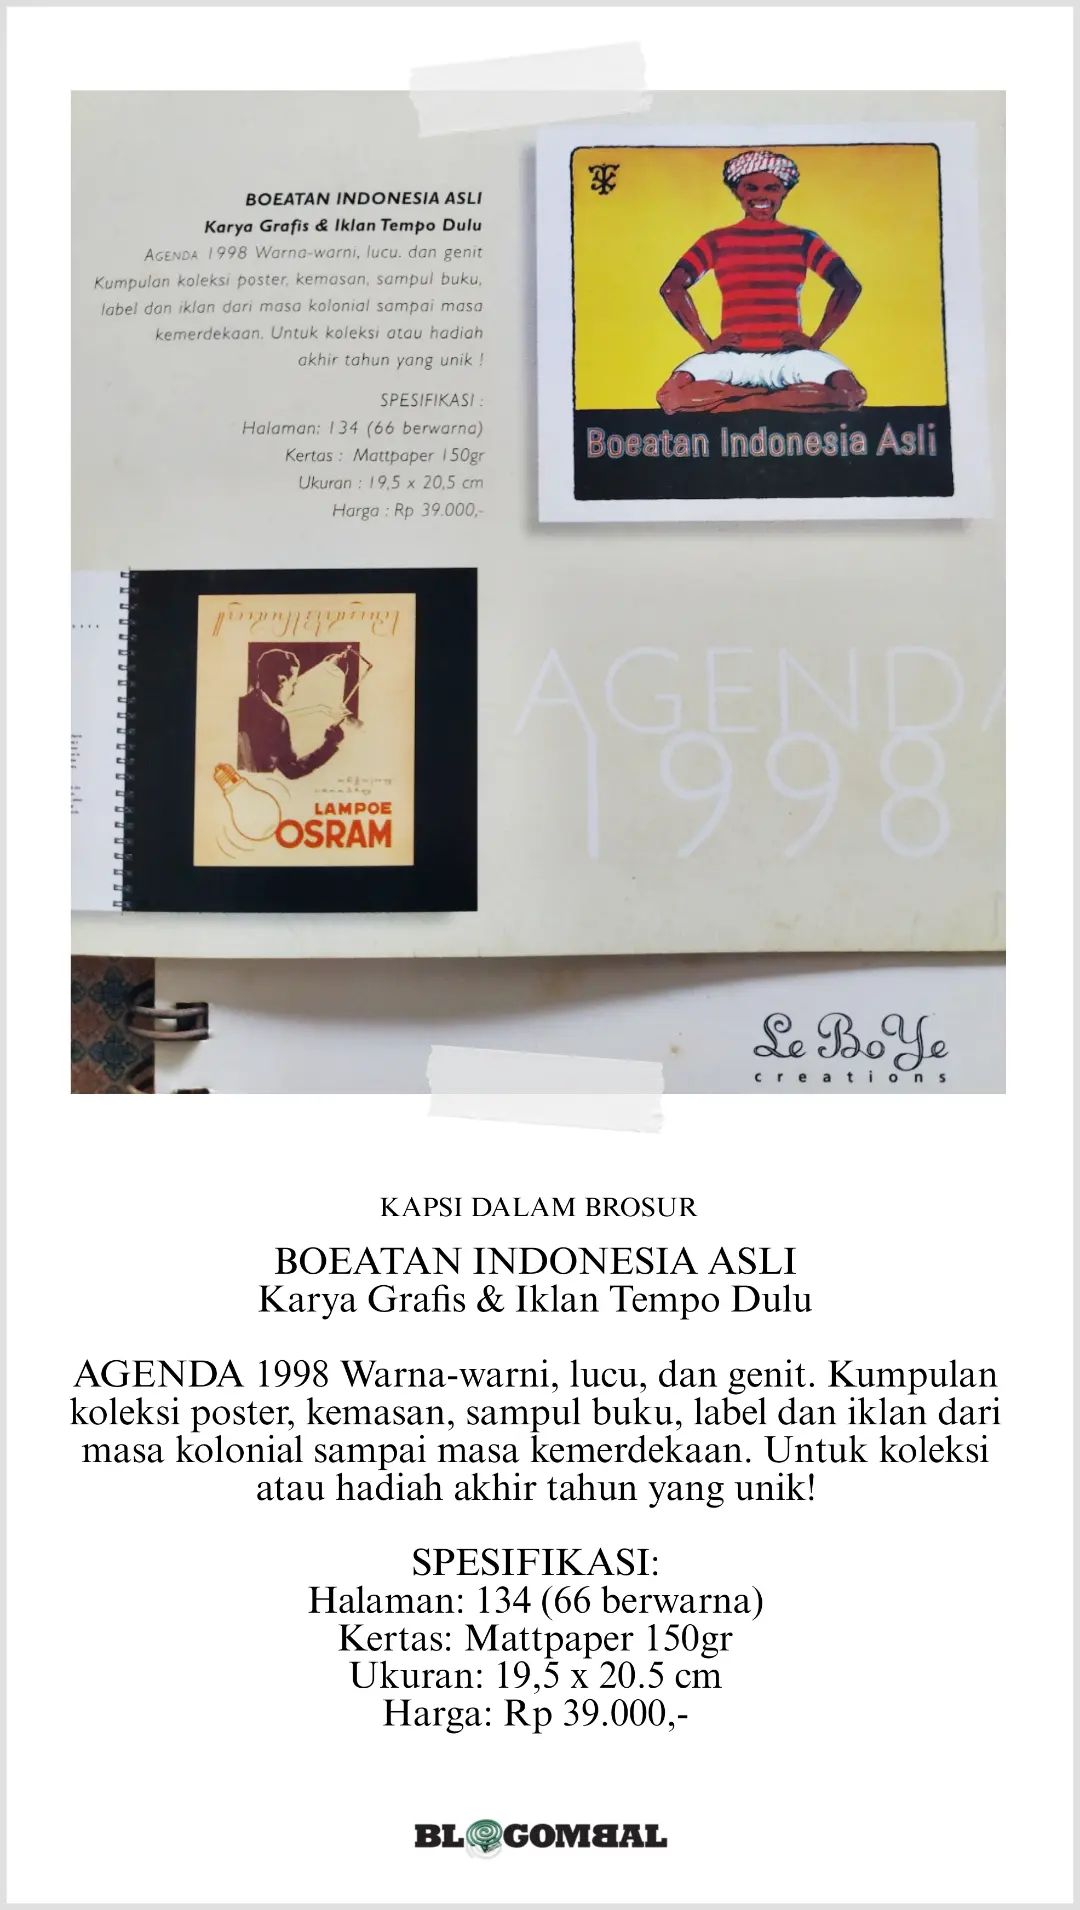 Nostalgia: Agenda 1998 dari Leboye, Asli Boeatan Indonesia 